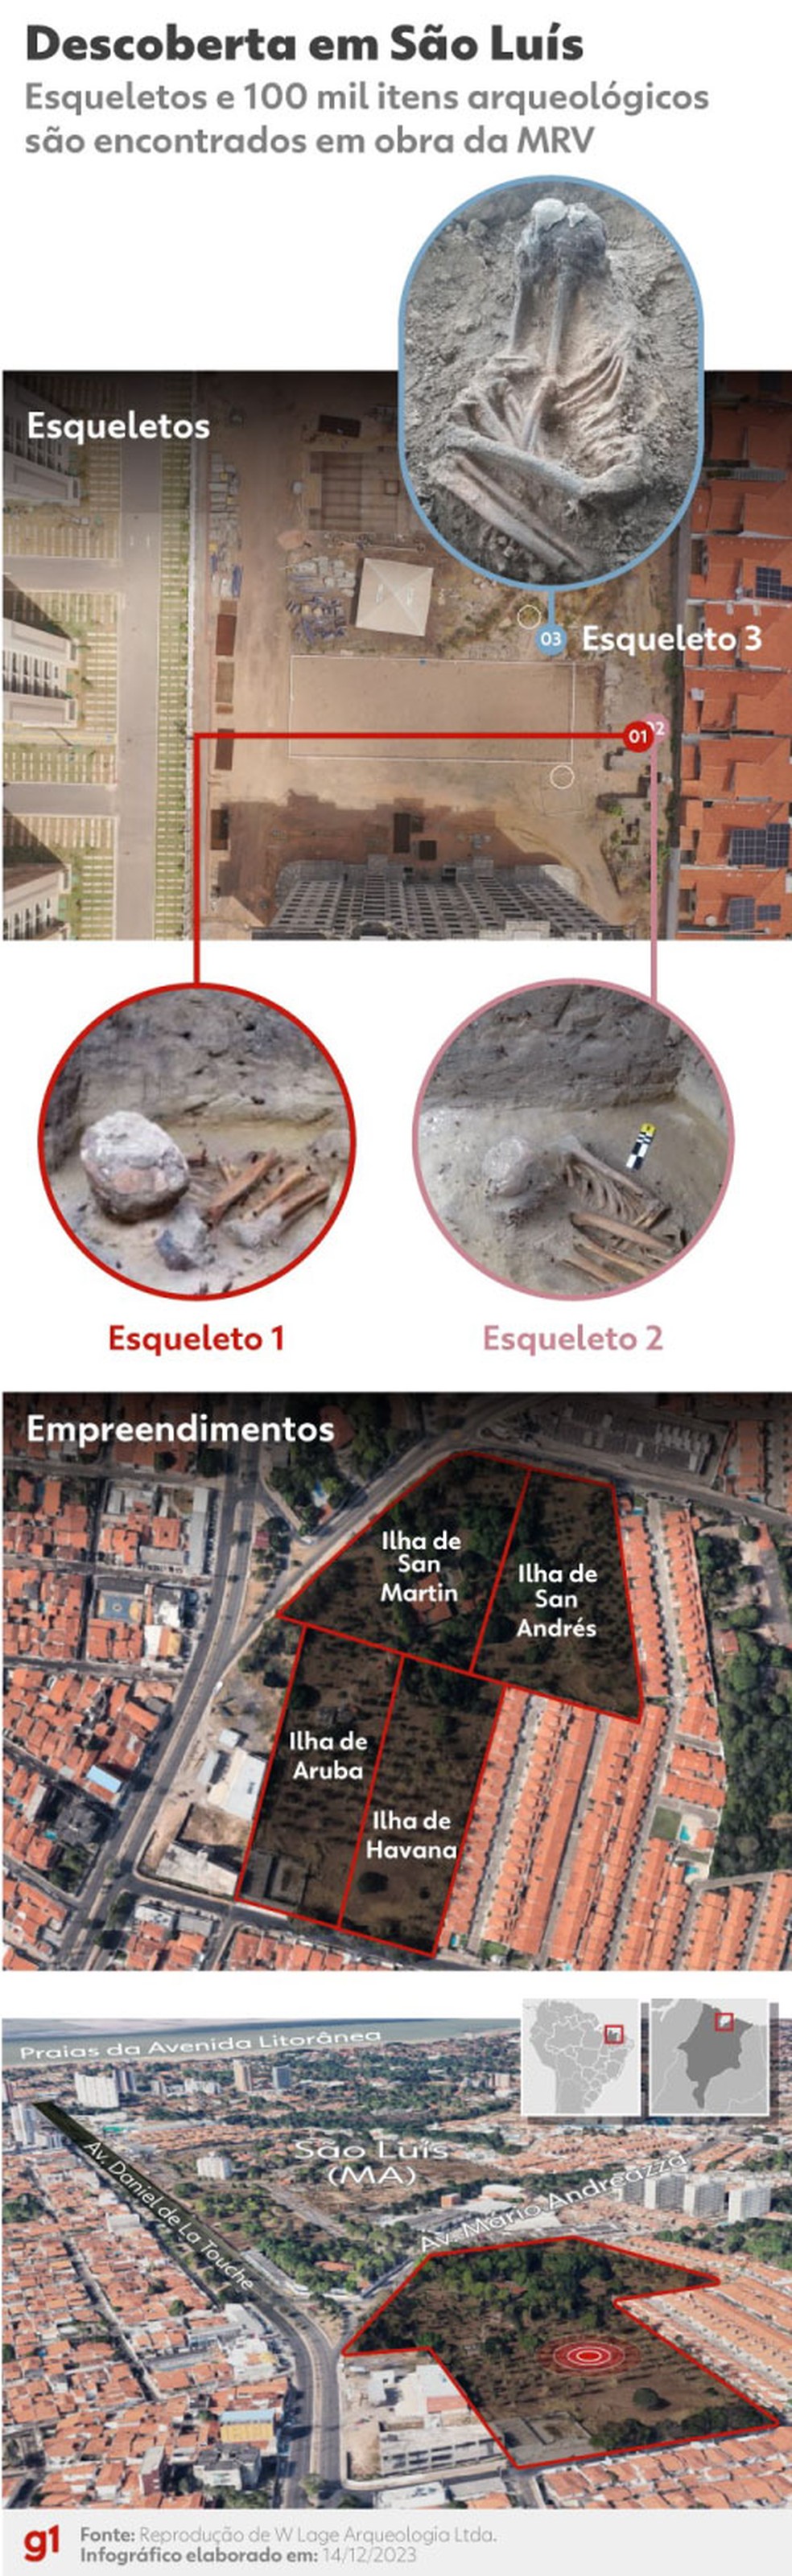 Infográfico mostra esqueletos encontrados durante obra da MRV em São Luís, no Maranhão — Foto: g1